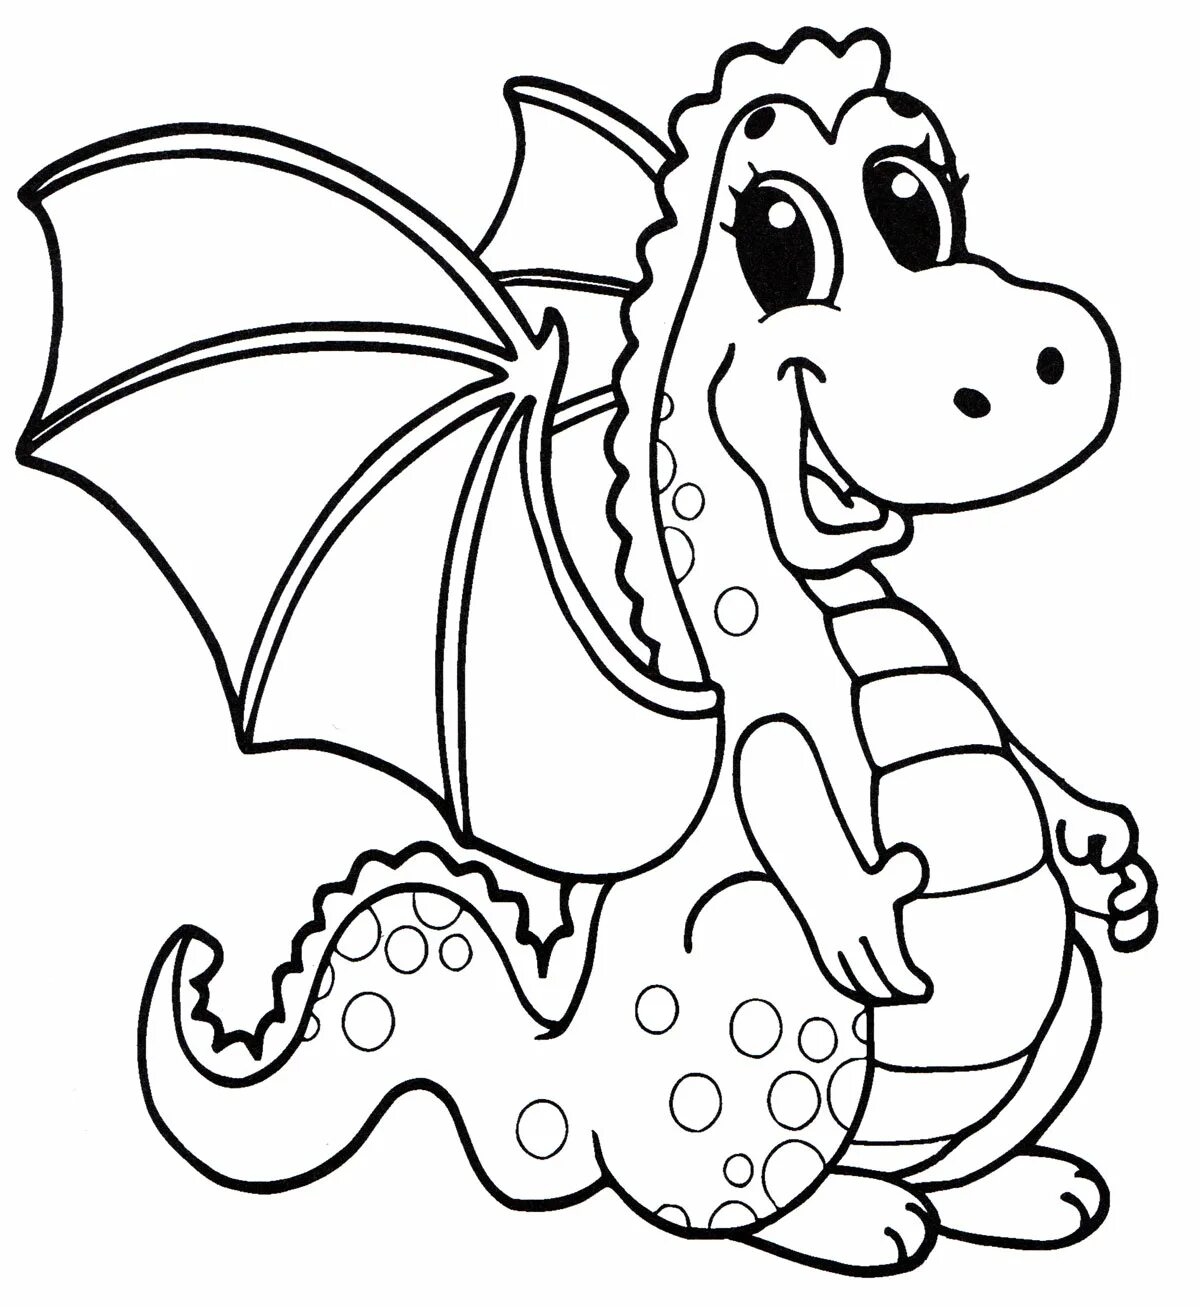 Рисунок дракончика на новый год. Раскраска дракон. Дракон раскраска для детей. Раскраска дракончик. Раскраски для детейракон.